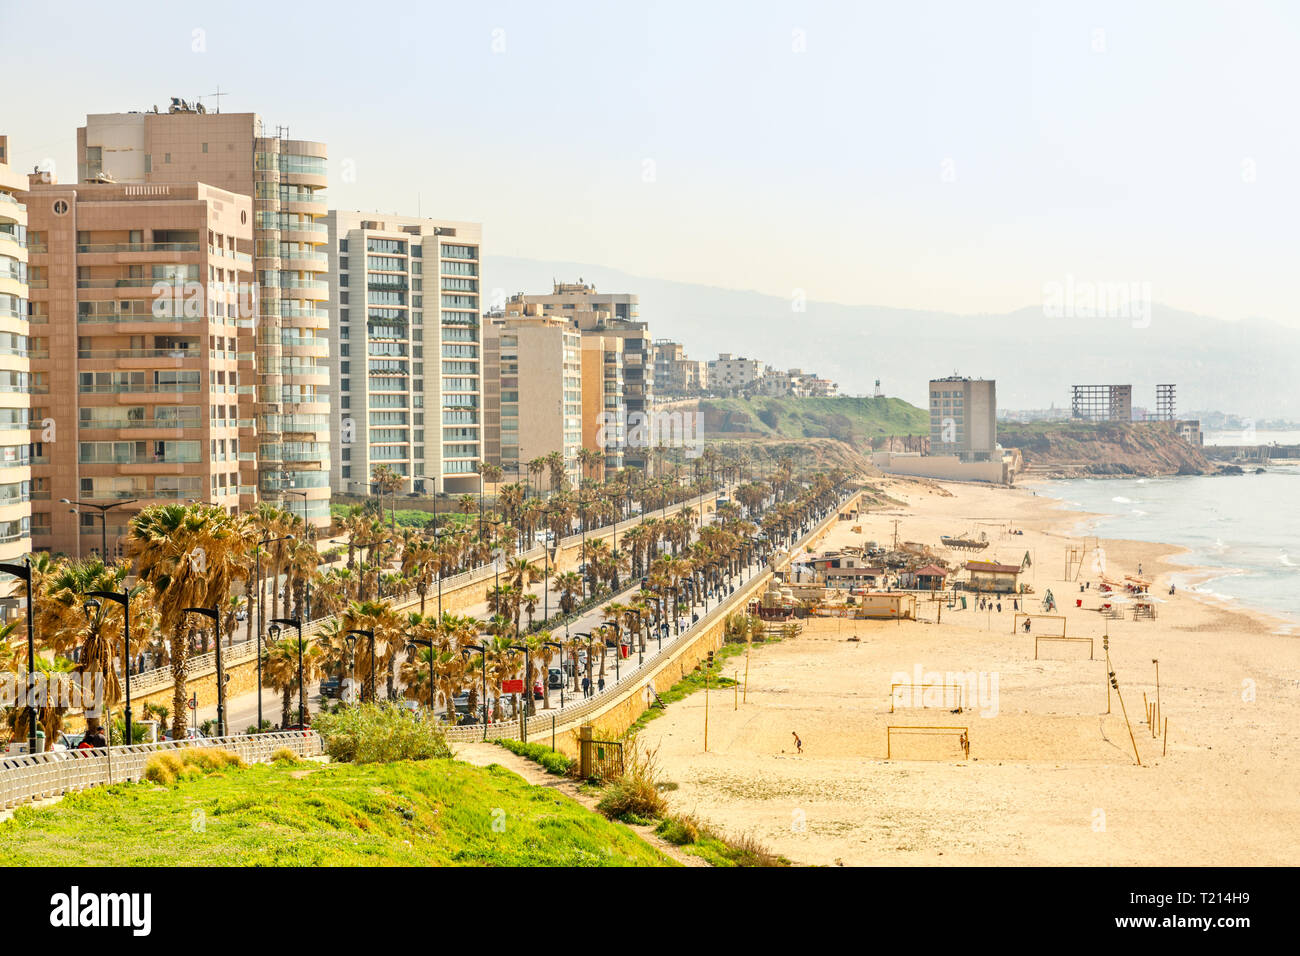 Passeggiata sul lungomare con un moderno edificio, una strada, spiaggia di sabbia e il mare, Beirut, Libano Foto Stock